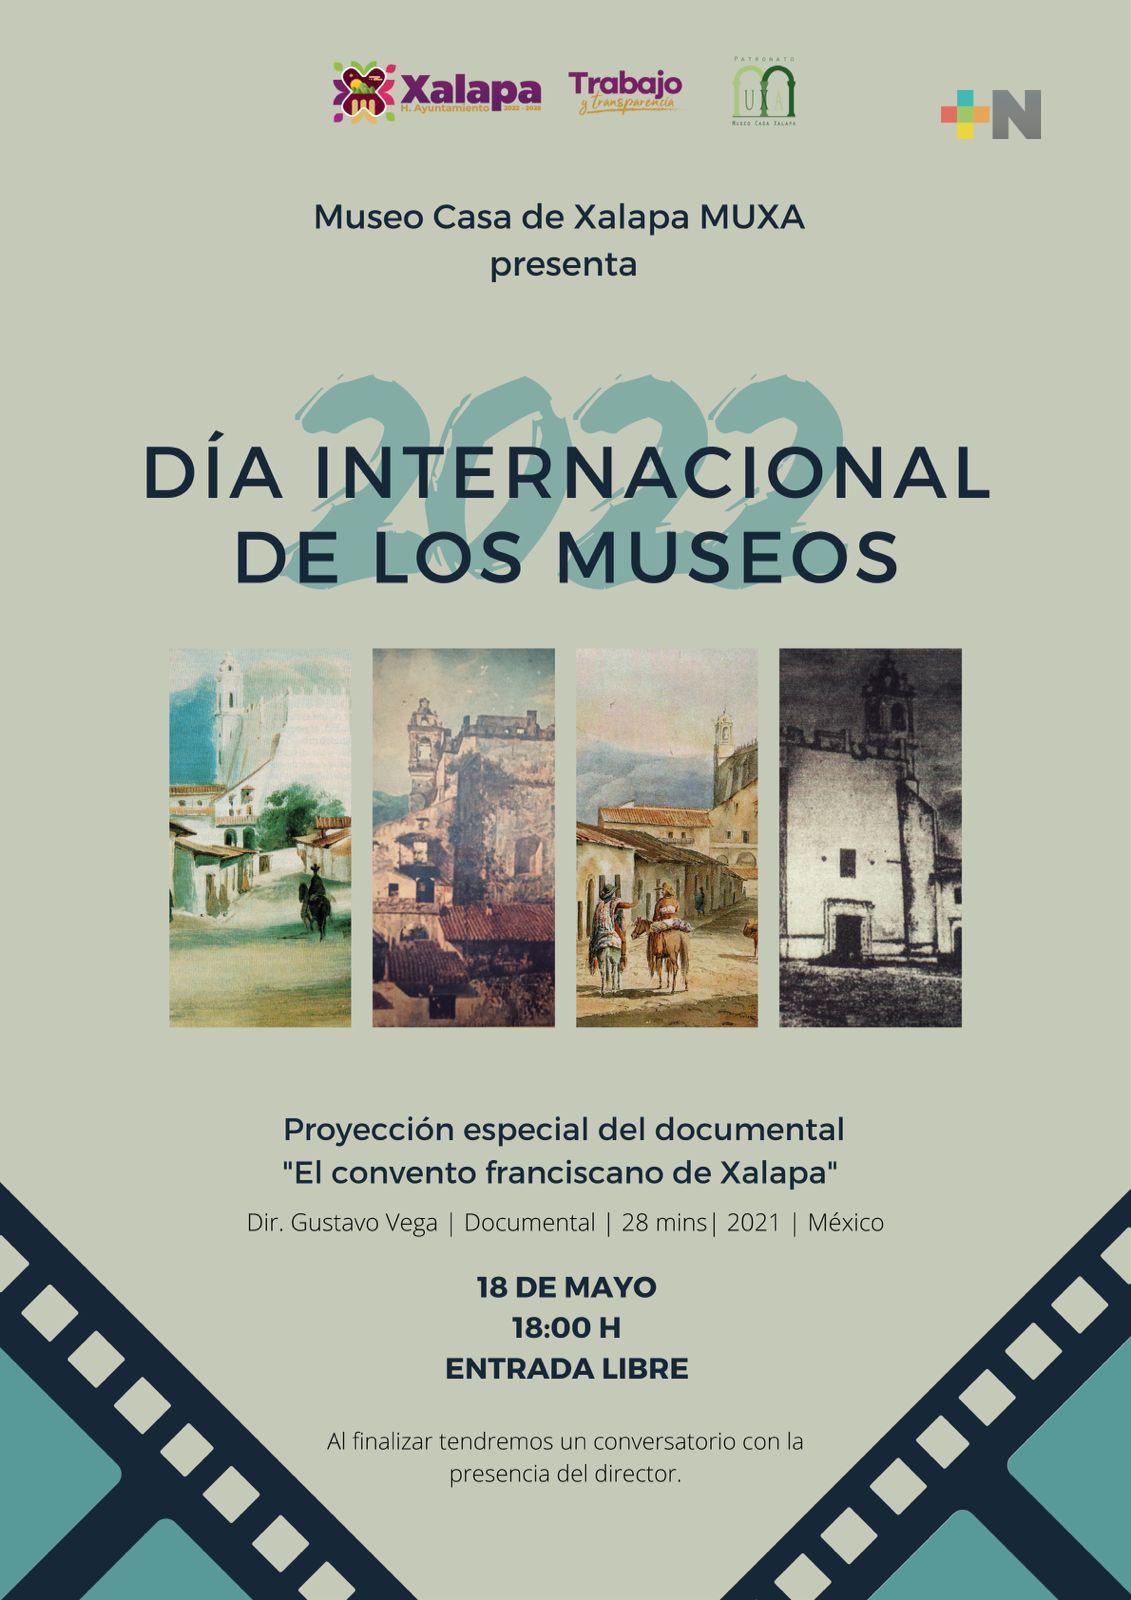 Presenta Ayuntamiento de Xalapa, semana dedicada a los museos y a Oaxaca